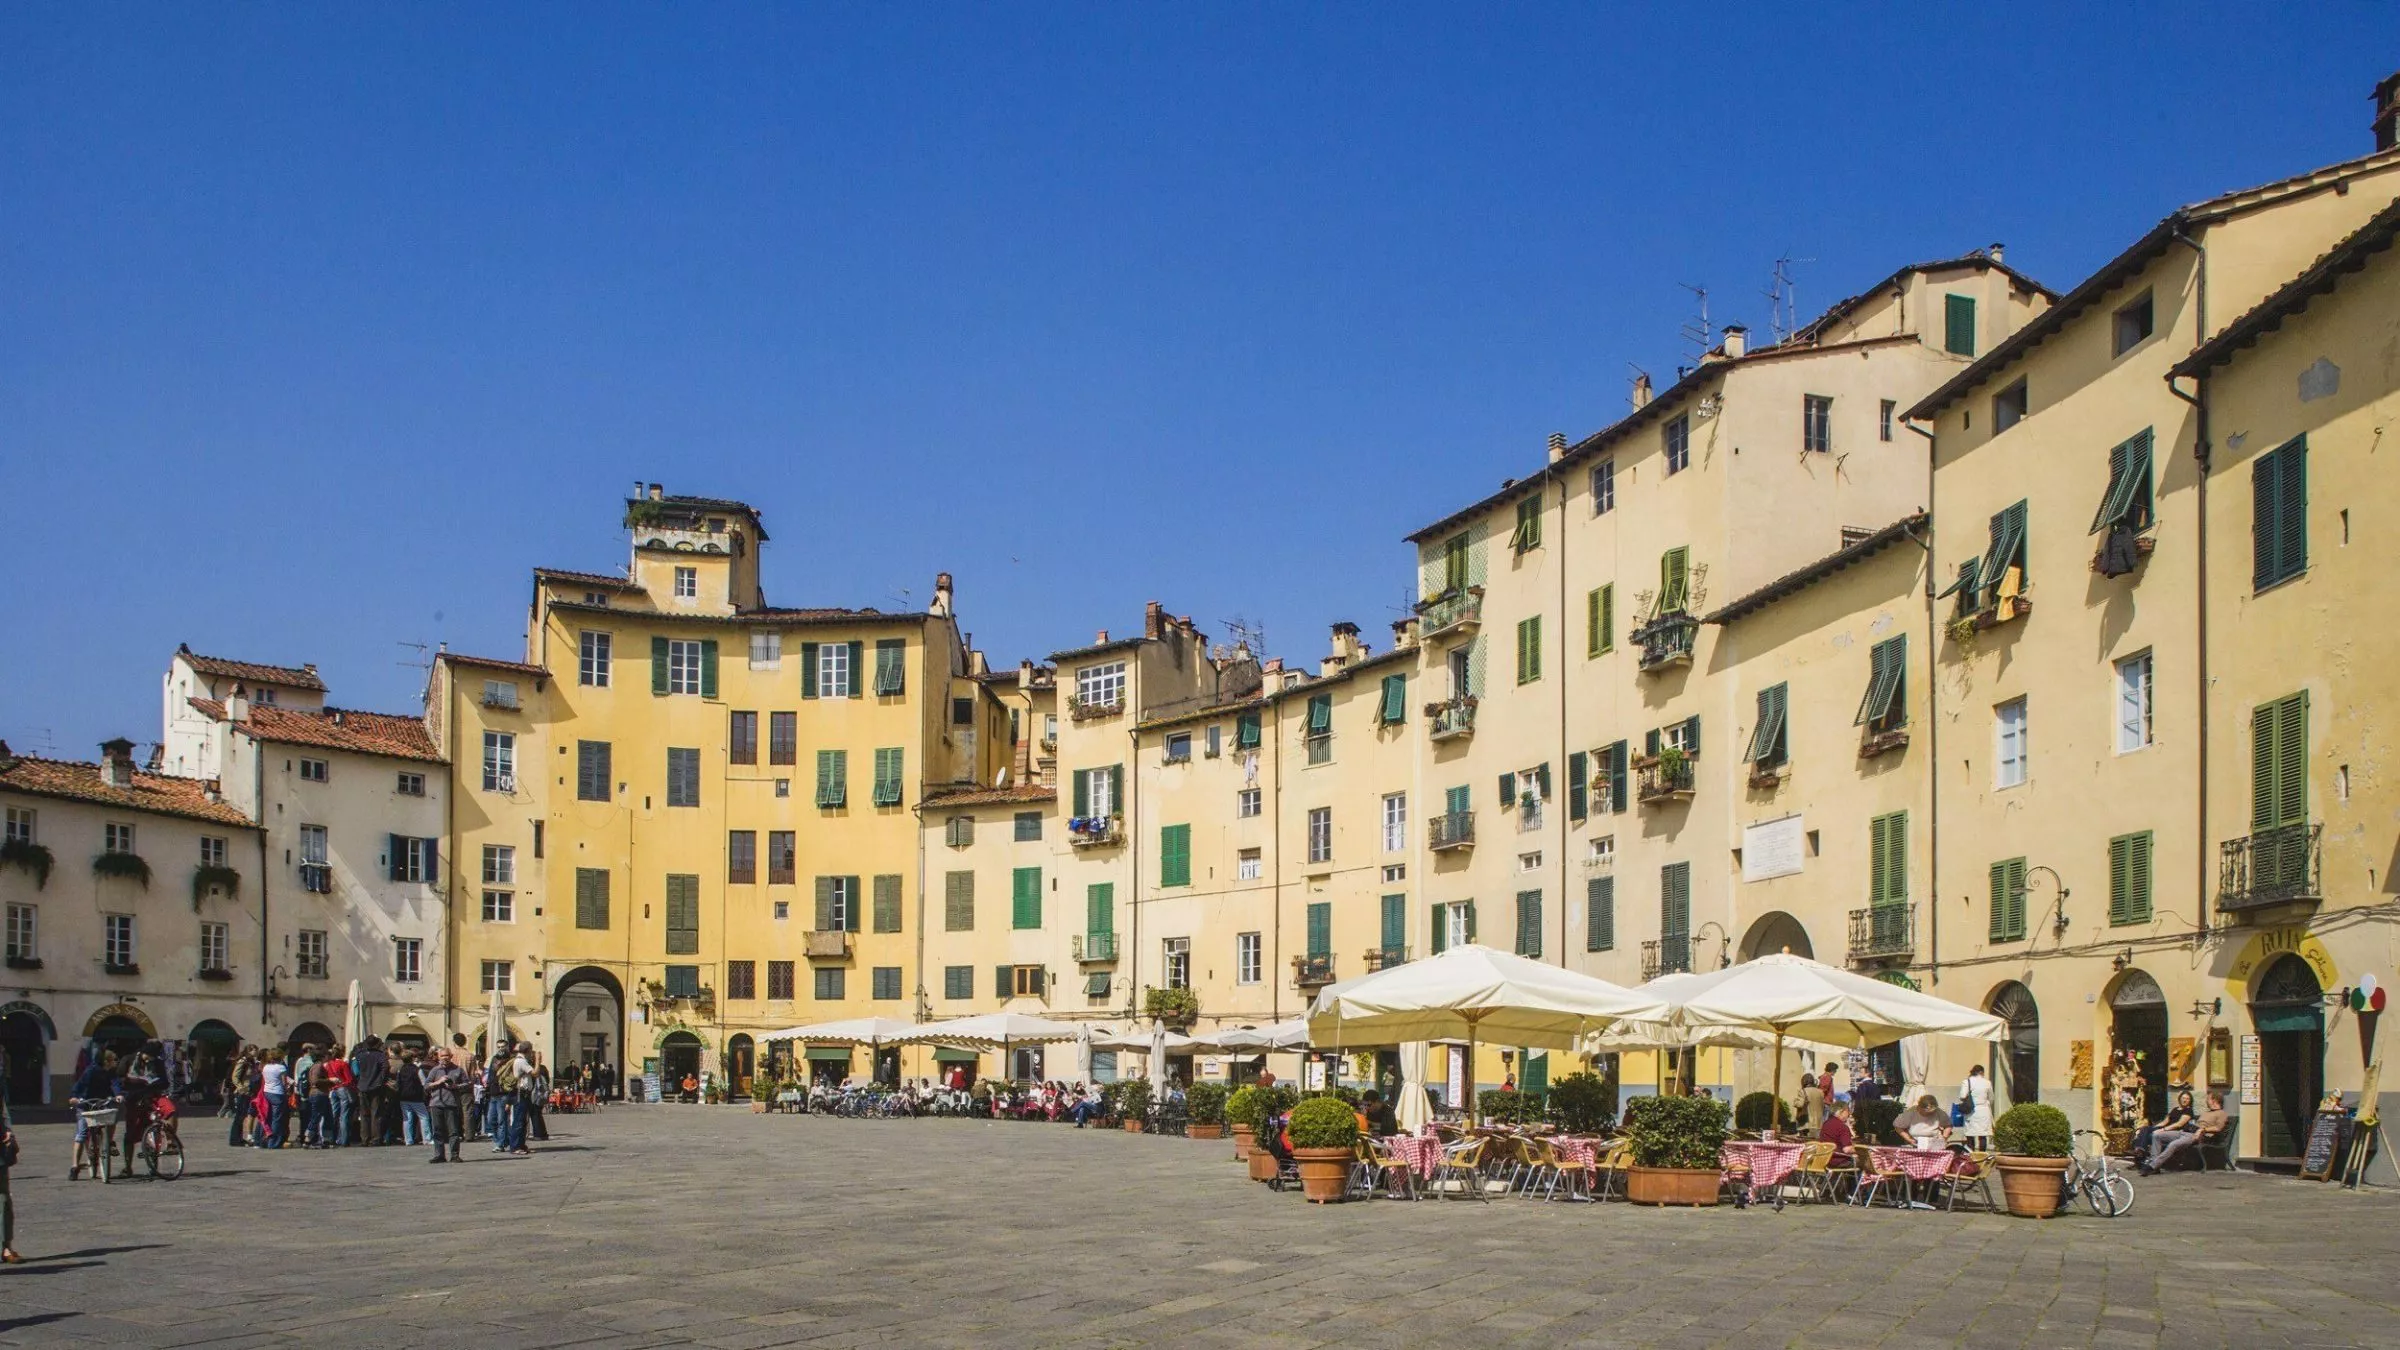 Woher die perfekte elliptische Form dieser Piazza in Lucca herrührt? Sie war einmal ein römisches Theater. Heute kann man auf der Piazza Anfiteatro Kaffee trinken